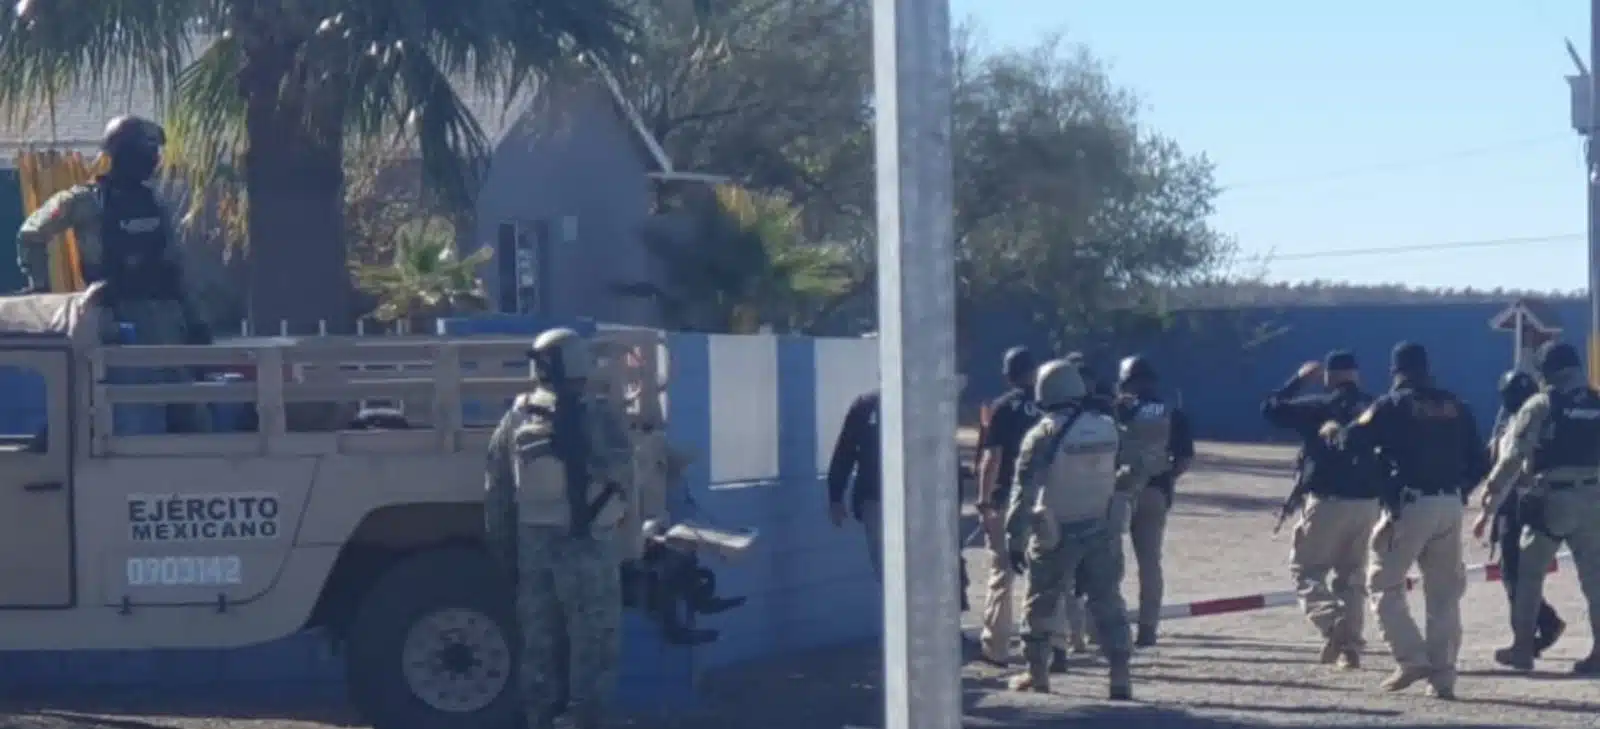 Federales rescatan a 18 migrantes que habían sido privados de su libertad en Sonora